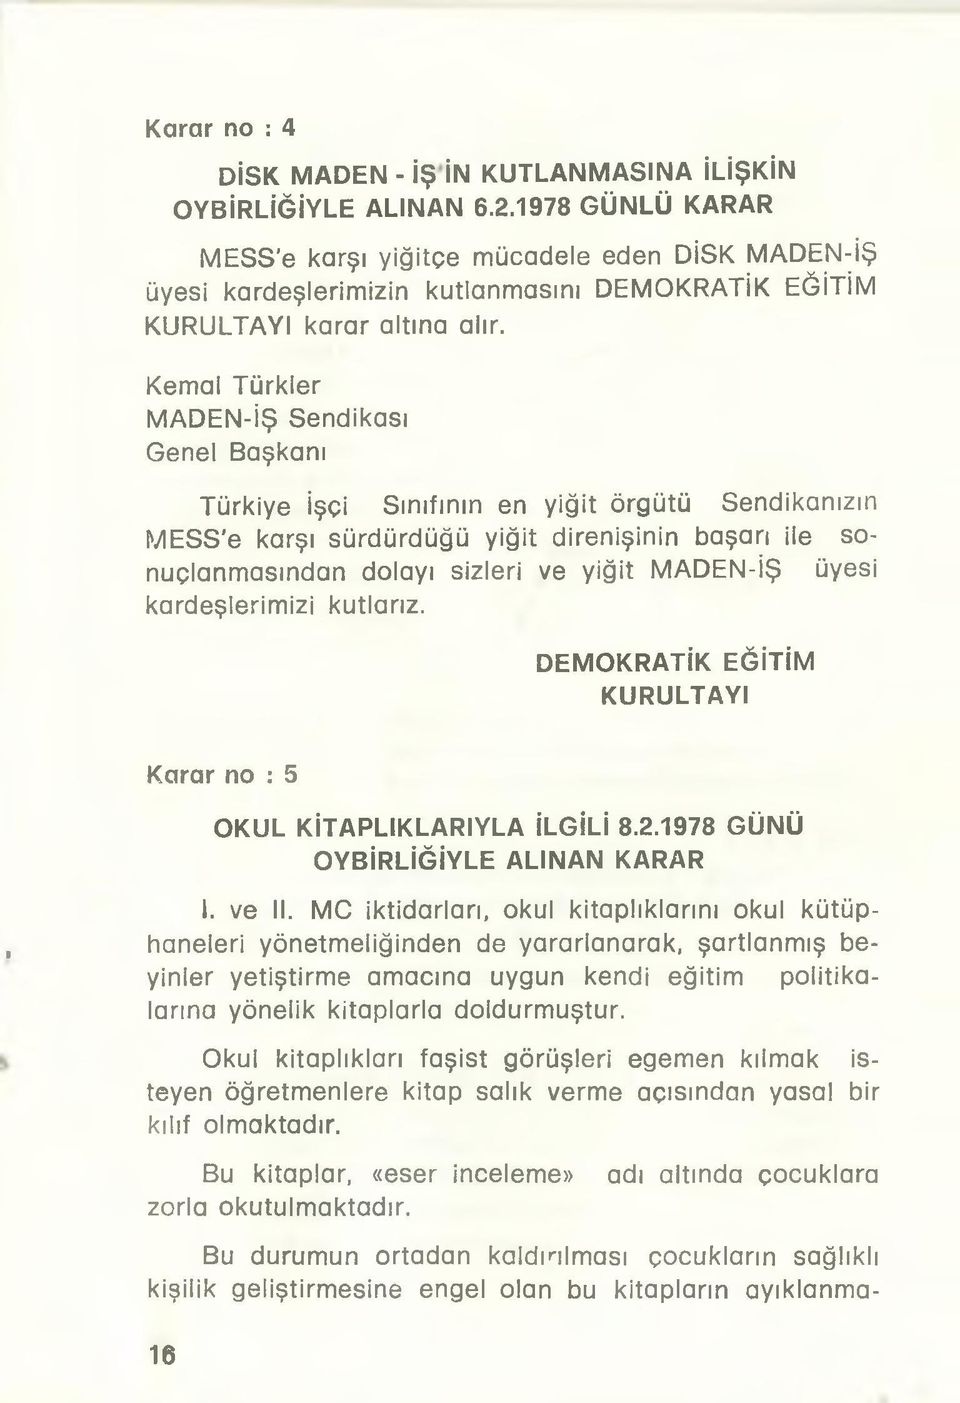 Kemal Türkler MADEN-İŞ Sendikası Genel Başkanı Türkiye İşçi Sınıfının en yiğit örgütü Sendikanızın MESS'e karşı sürdürdüğü yiğit direnişinin başarı ile sonuçlanmasından dolayı sizleri ve yiğit